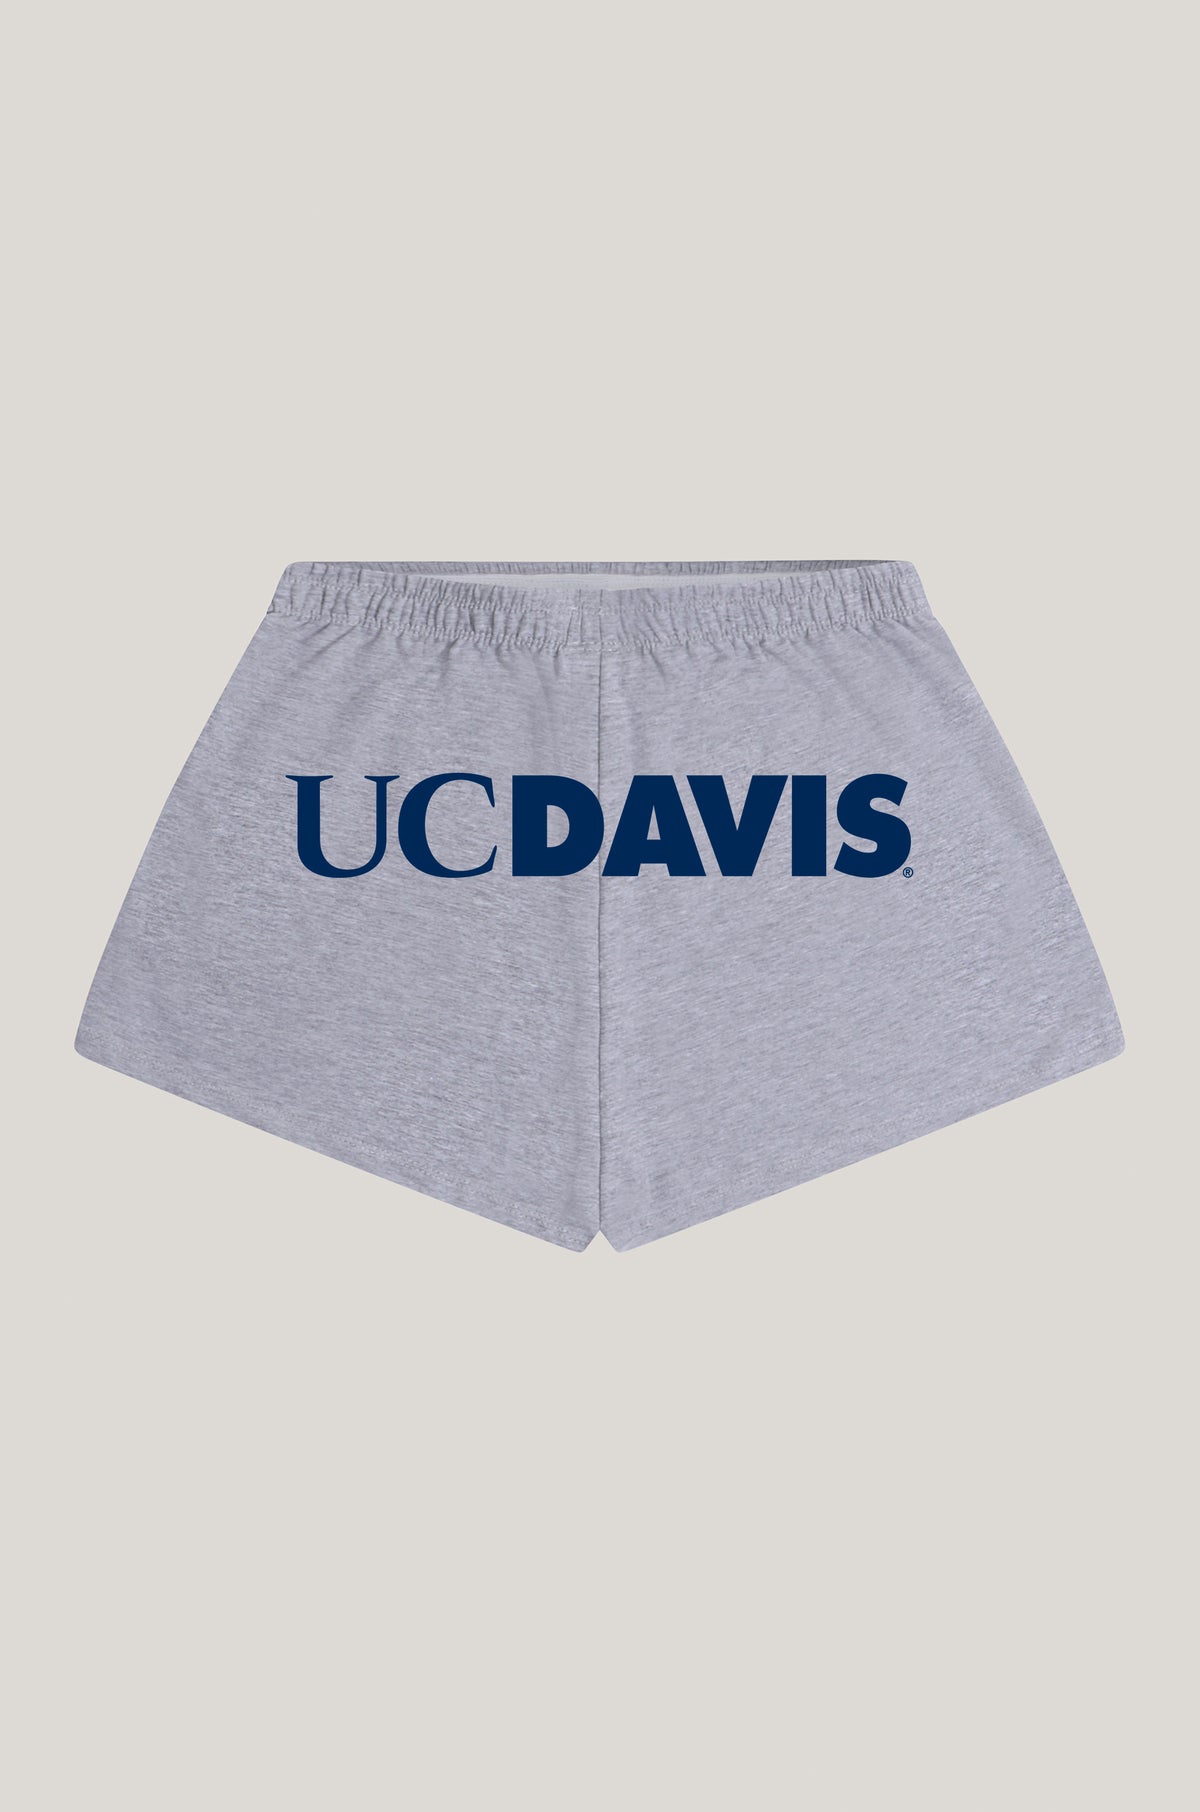 UC Davis P.E. Shorts